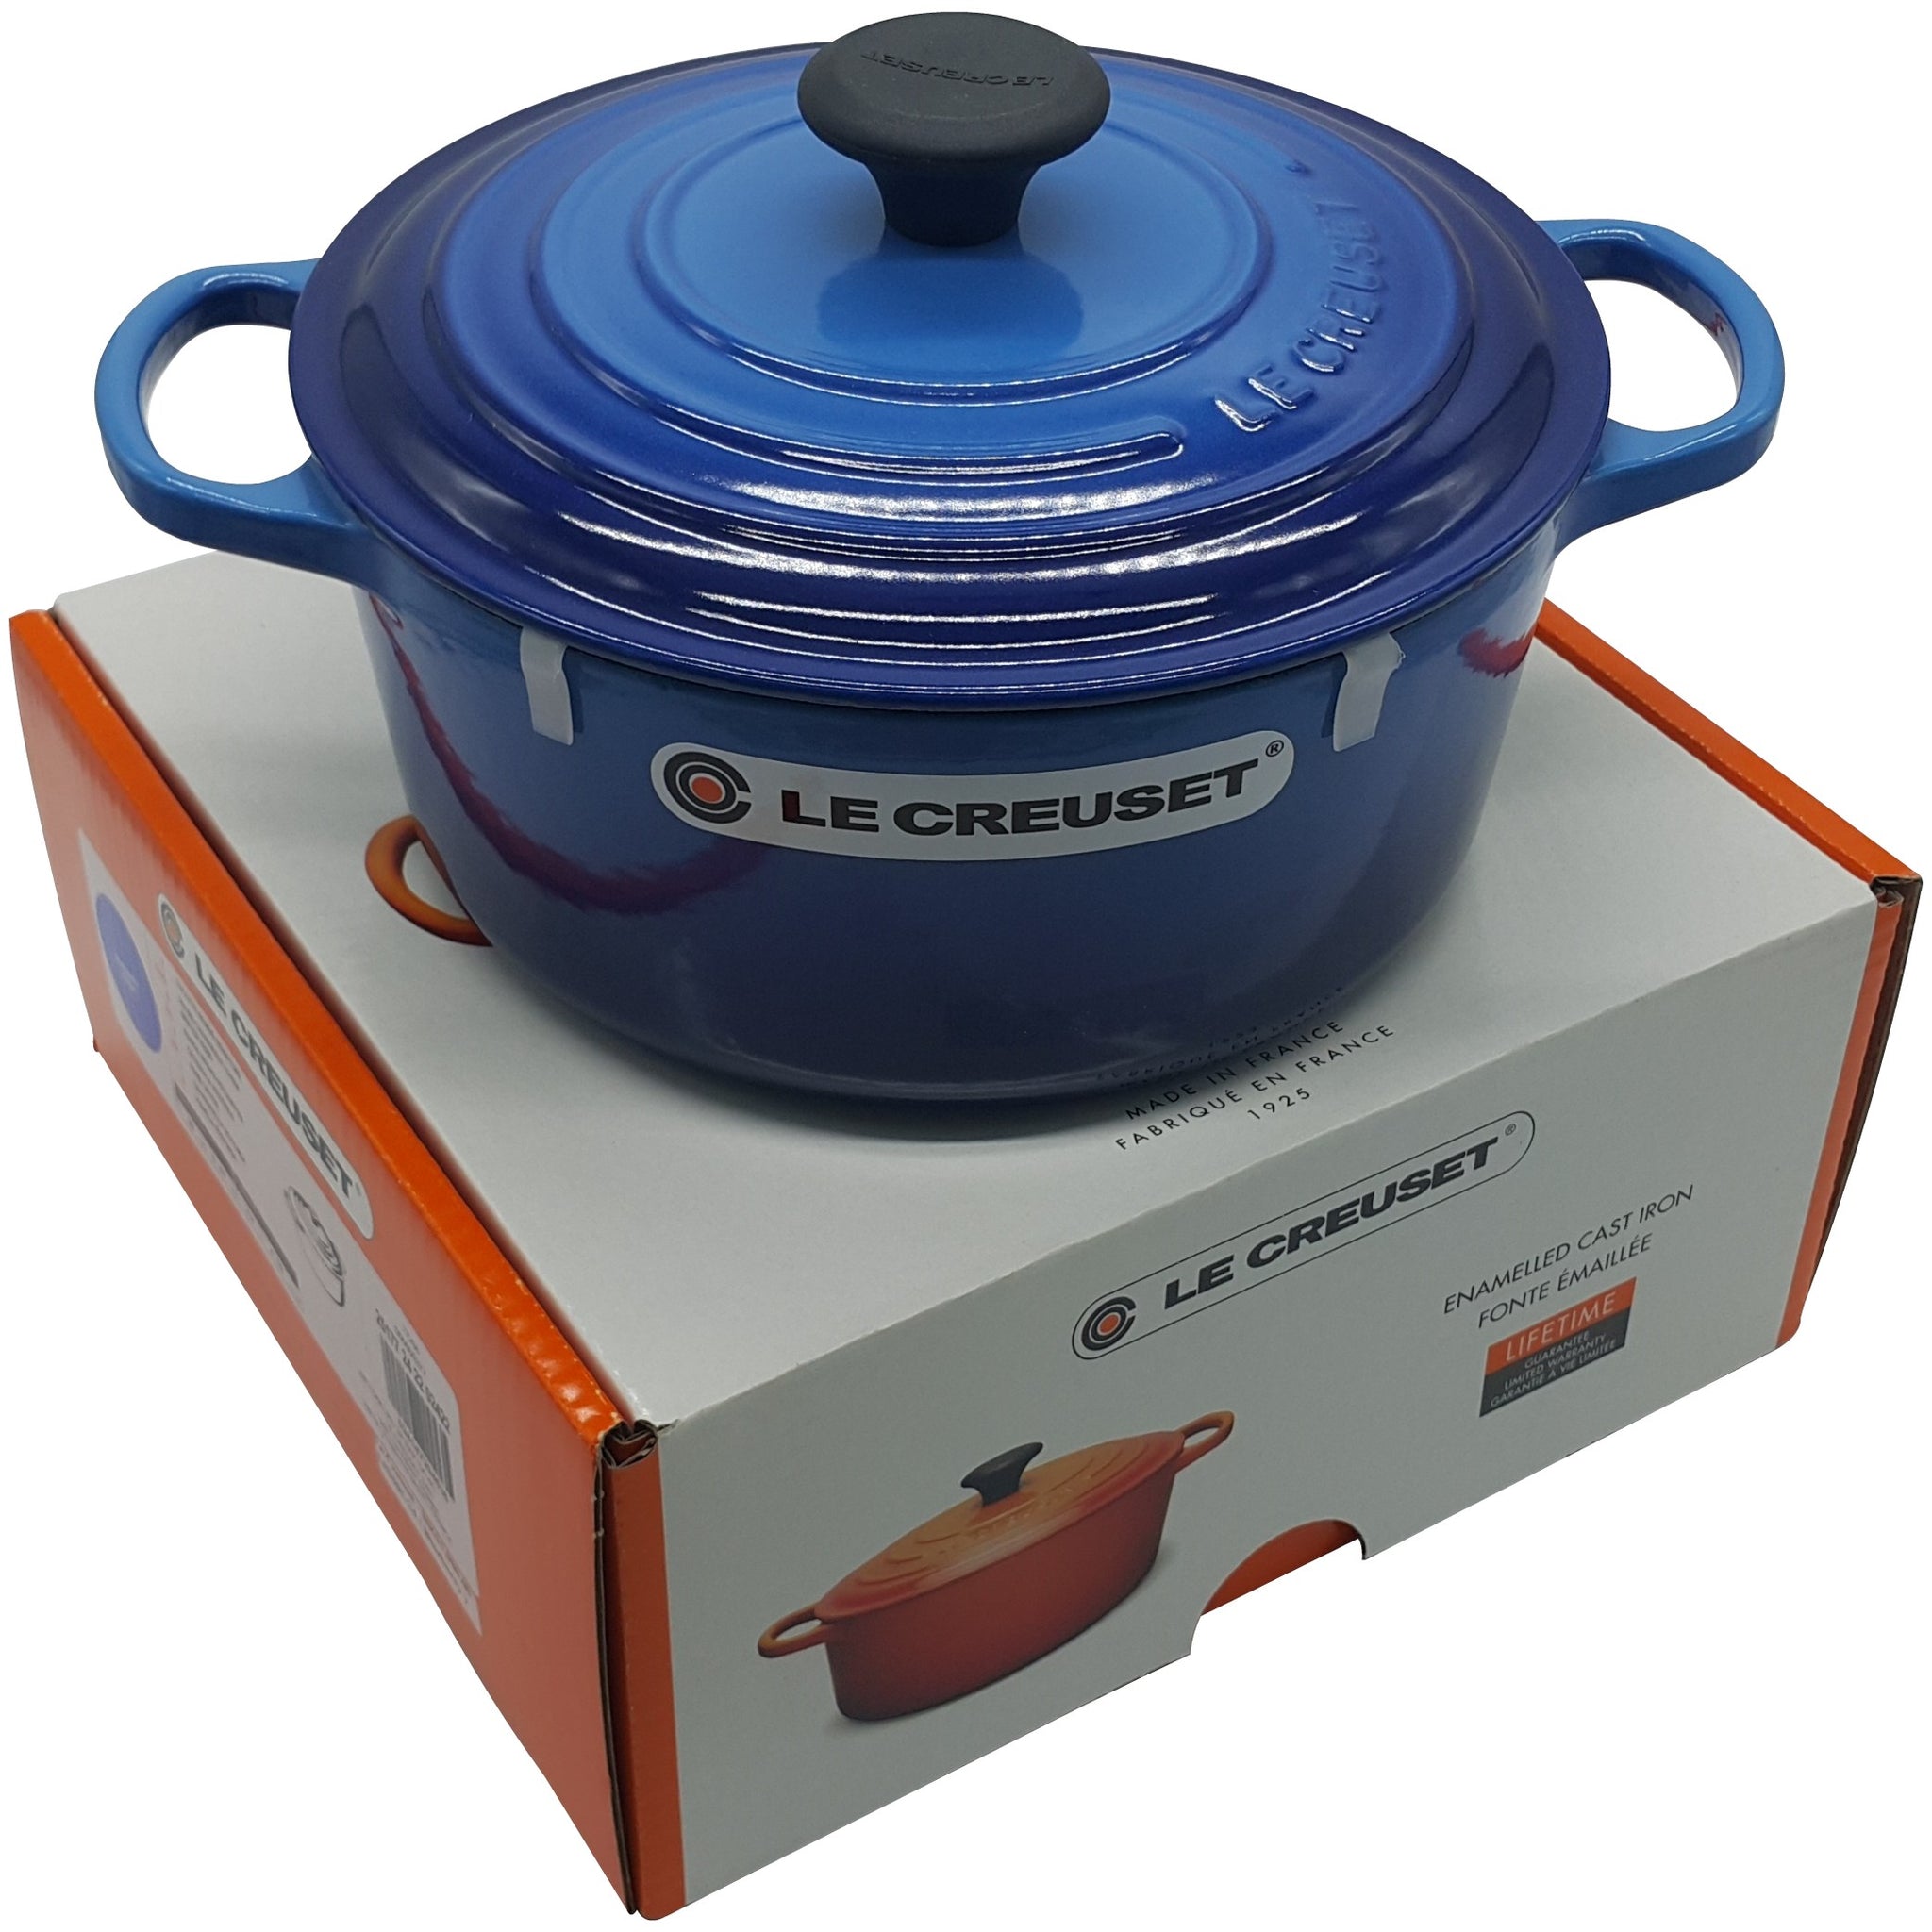 Le Creuset round casserole 24cm | 4colors choose – Display Shop